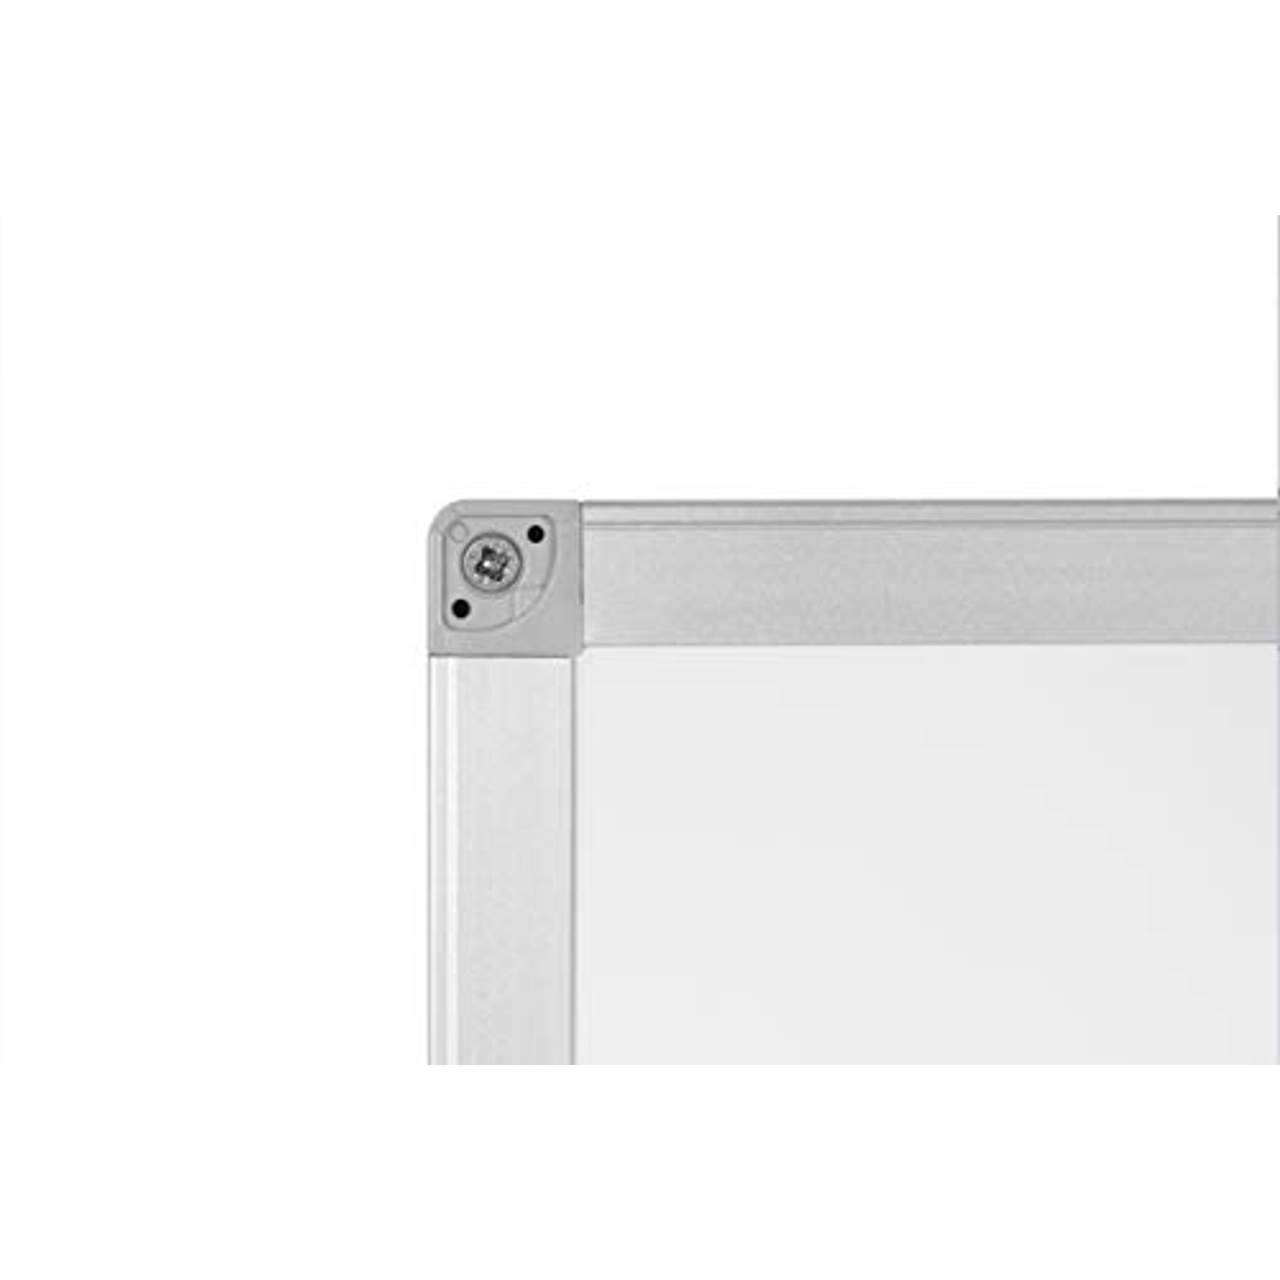 BoardsPlus Magnetisches Whiteboard 90 x 60 cm